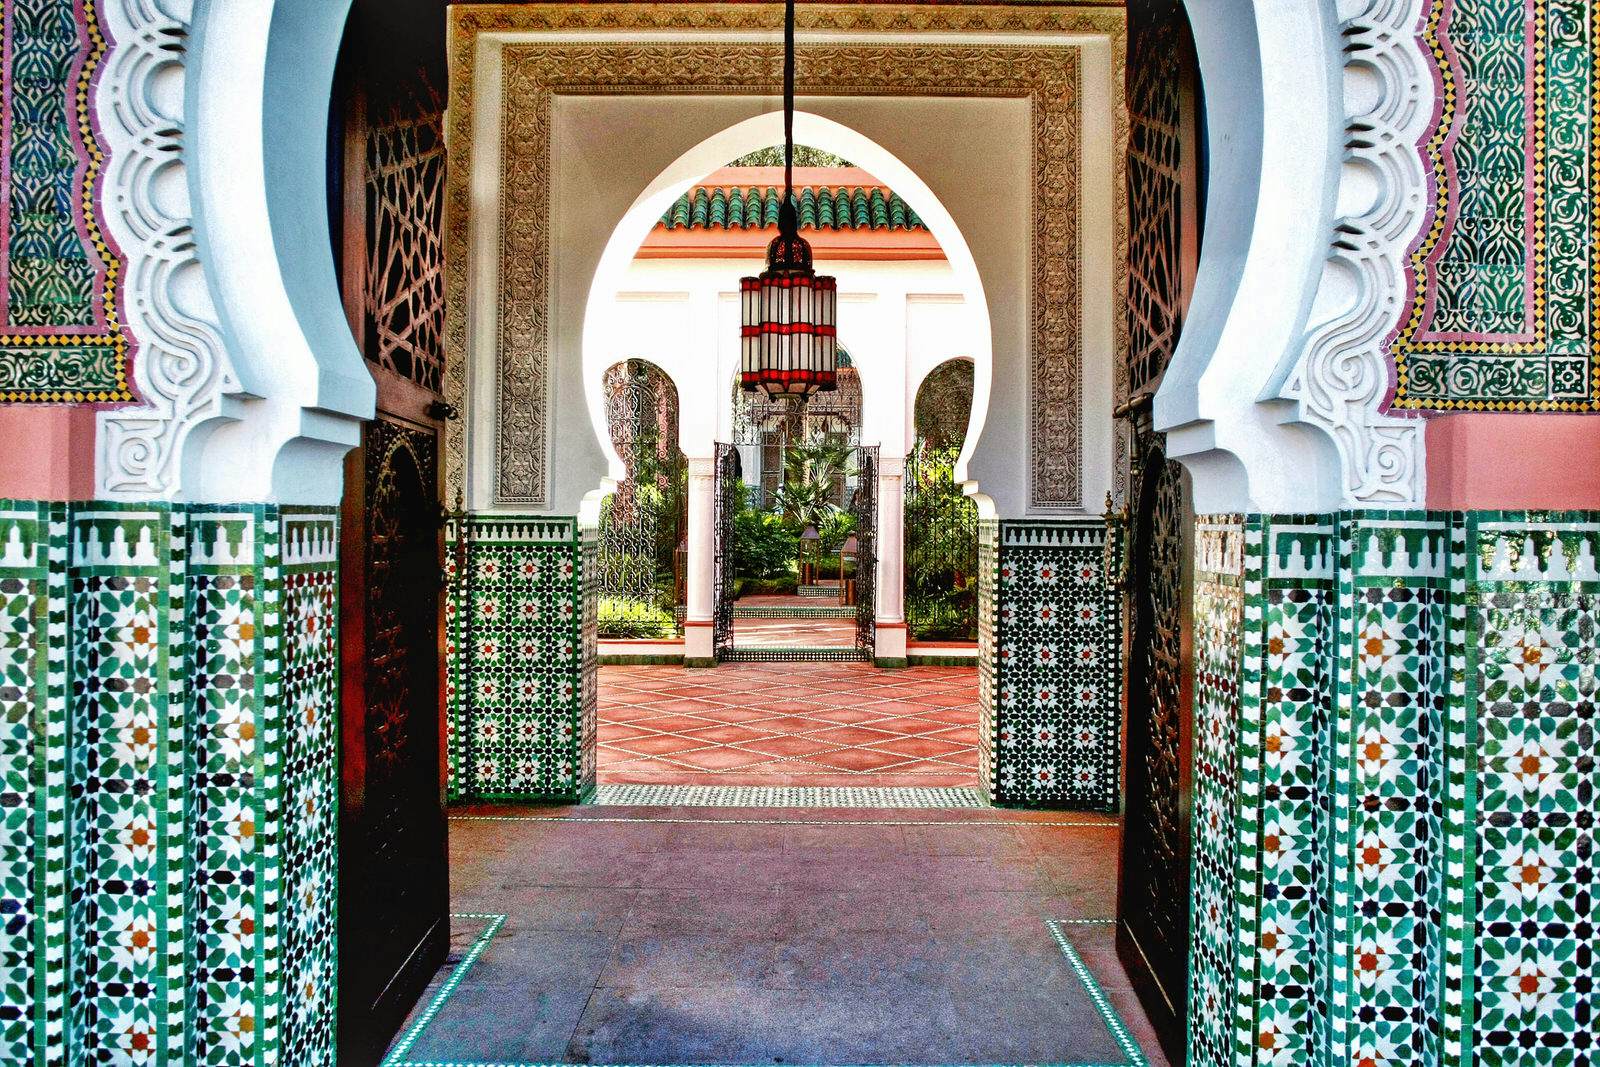 Khu spa Marrakesh: Tận hưởng không khí thư giãn tuyệt vời của Marrakesh Spa! Trong không gian sang trọng và yên tĩnh, bạn sẽ được trải nghiệm các liệu pháp spa độc đáo giúp tăng cường sức khỏe và cân bằng tinh thần. Đừng bỏ lỡ cơ hội thư giãn tuyệt vời này - hãy xem hình ảnh để biết thêm chi tiết. 